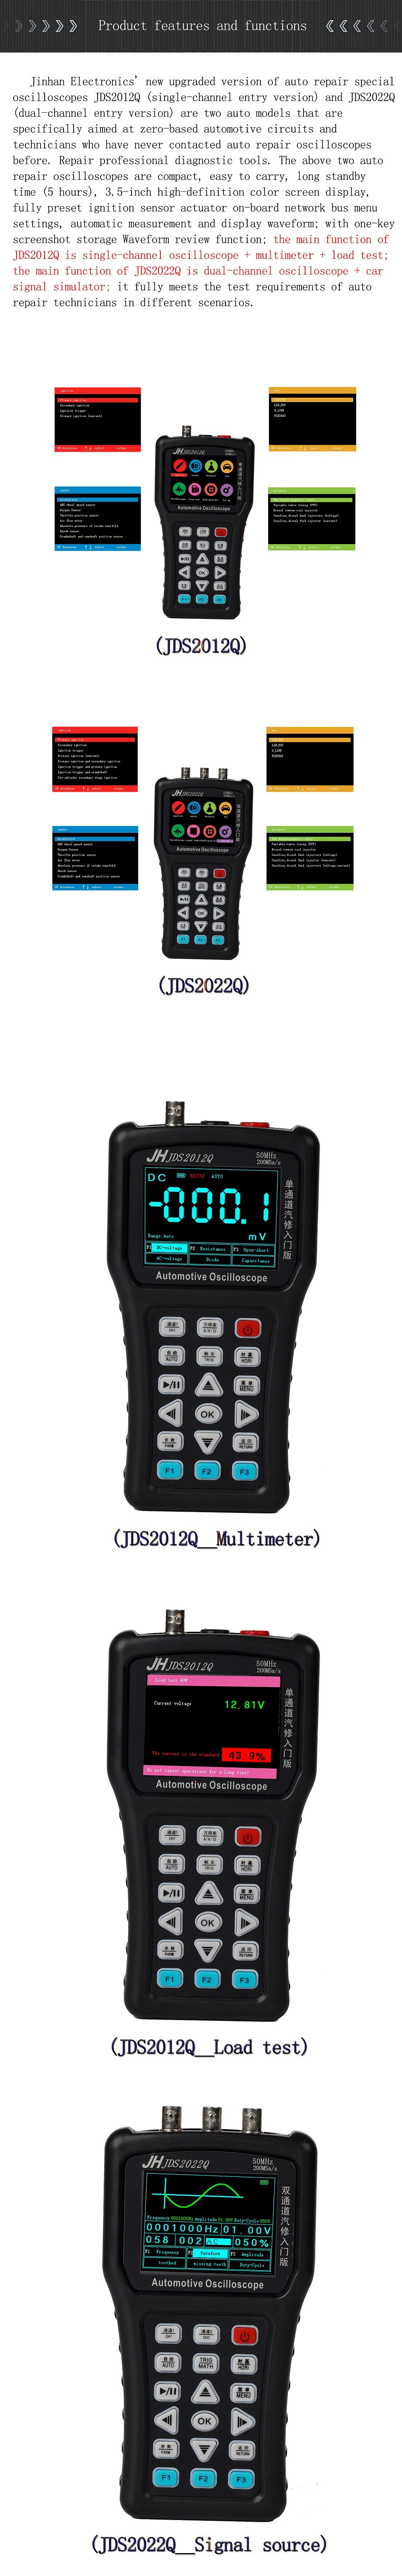 JDS2012Q-Handheld-Single-channel-Digital-Oscilloscope--Multimeter--Load-Test-Support-Analog-Bandwidt-1738040